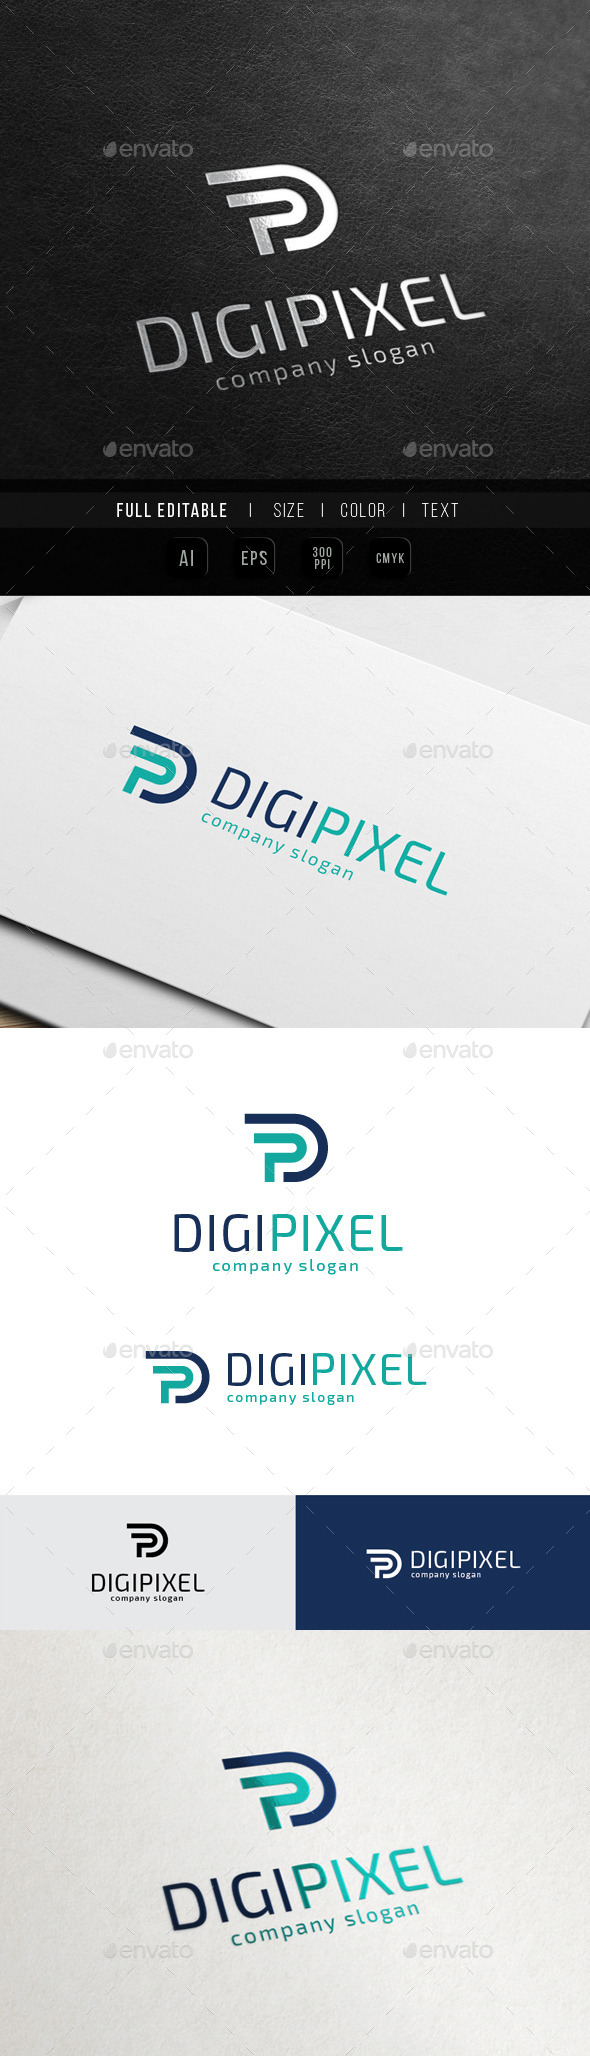 Digital Production - Letter P / PD